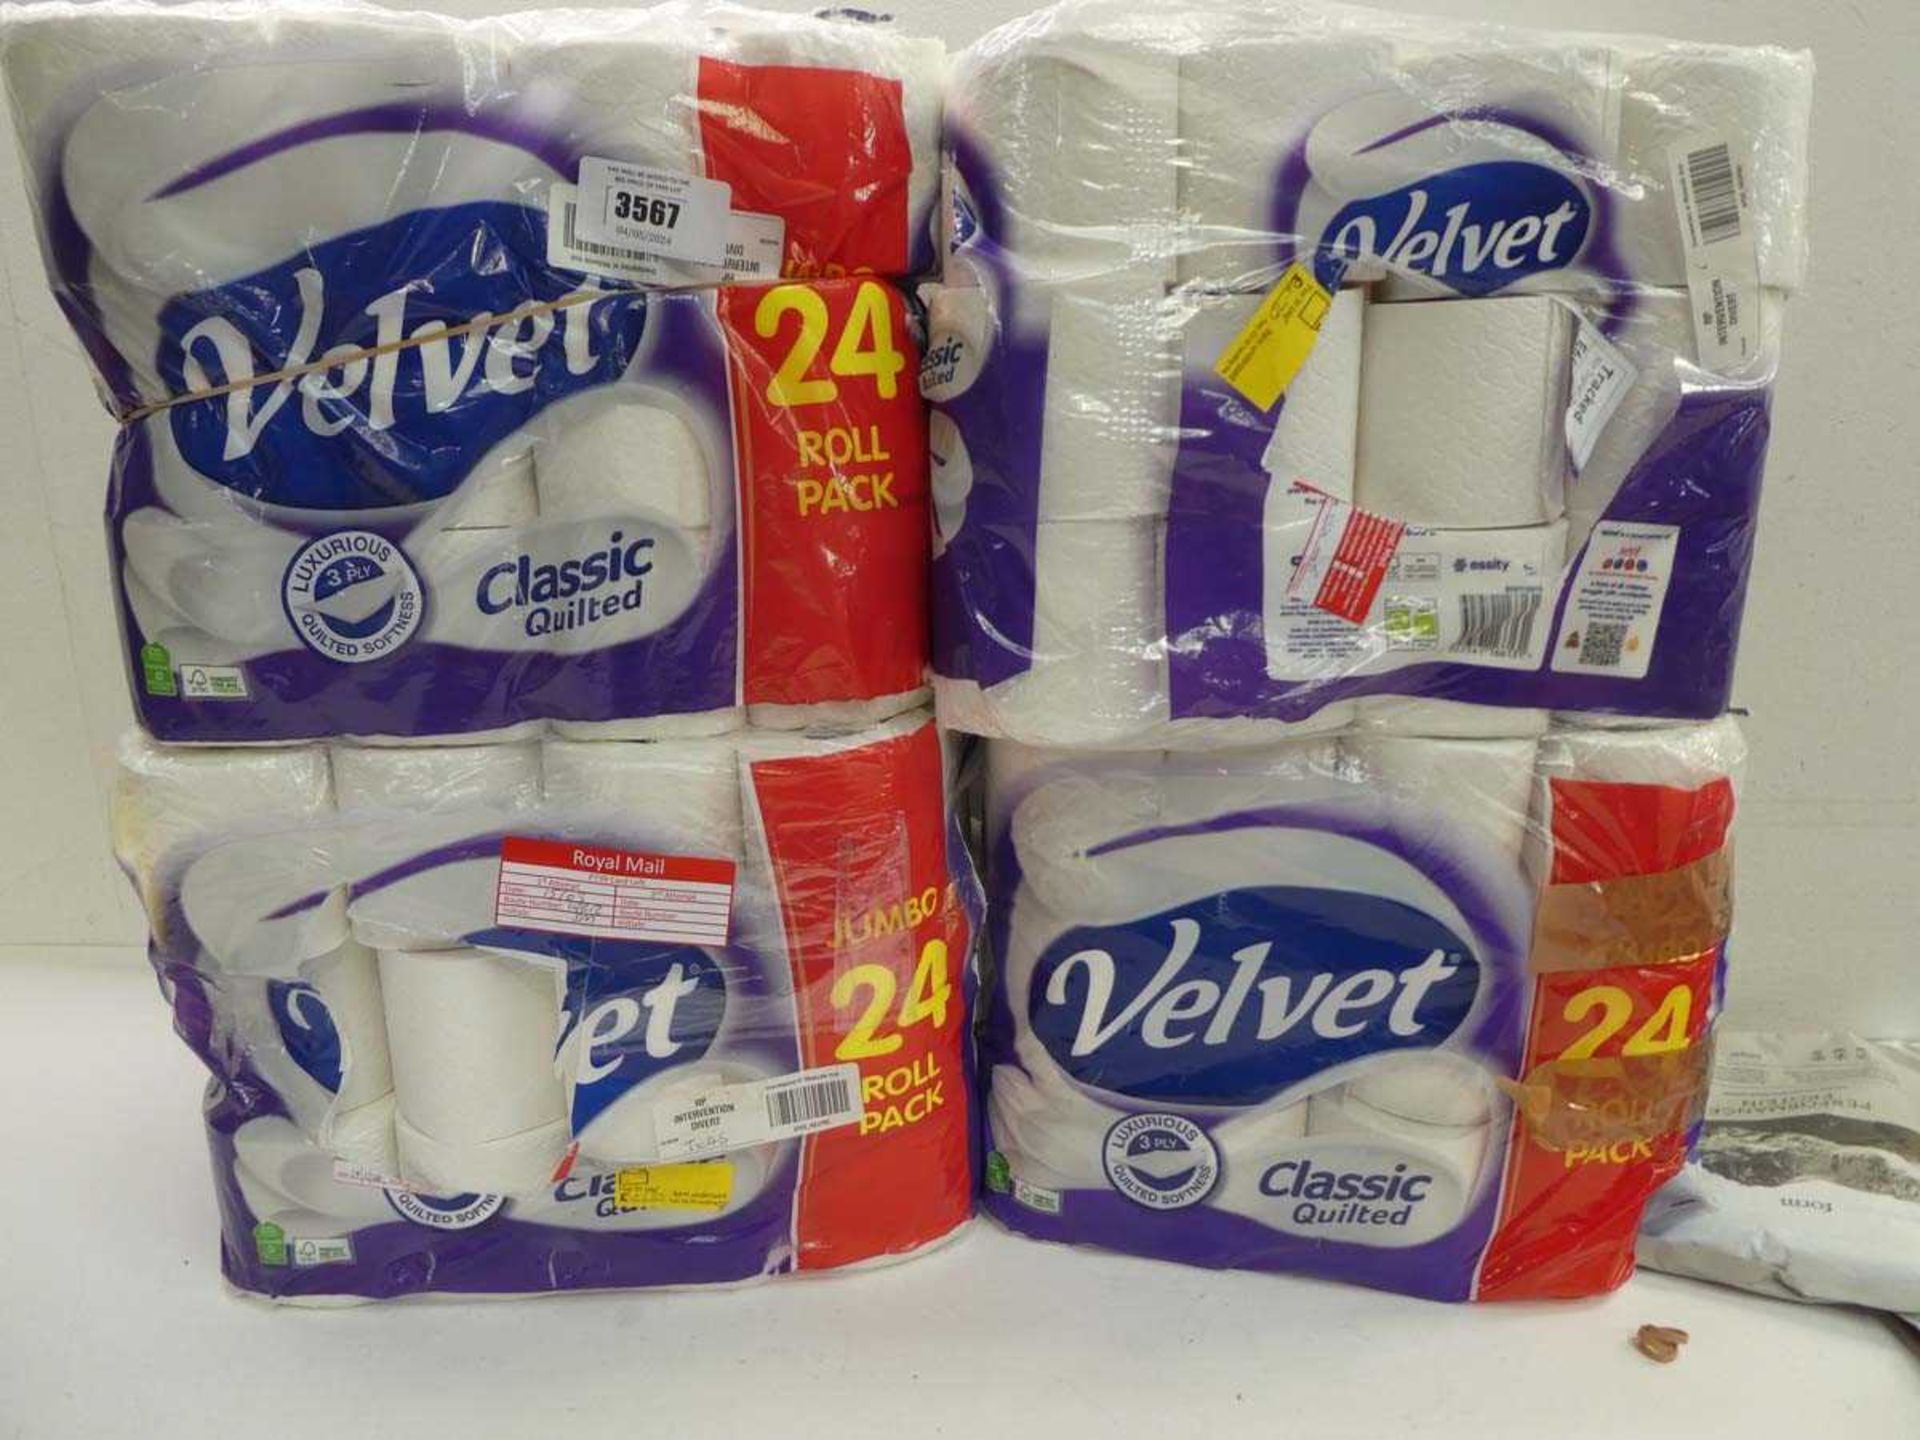 +VAT 4 packs of 24 rolls of Velvet Classic Quilted toilet tissue